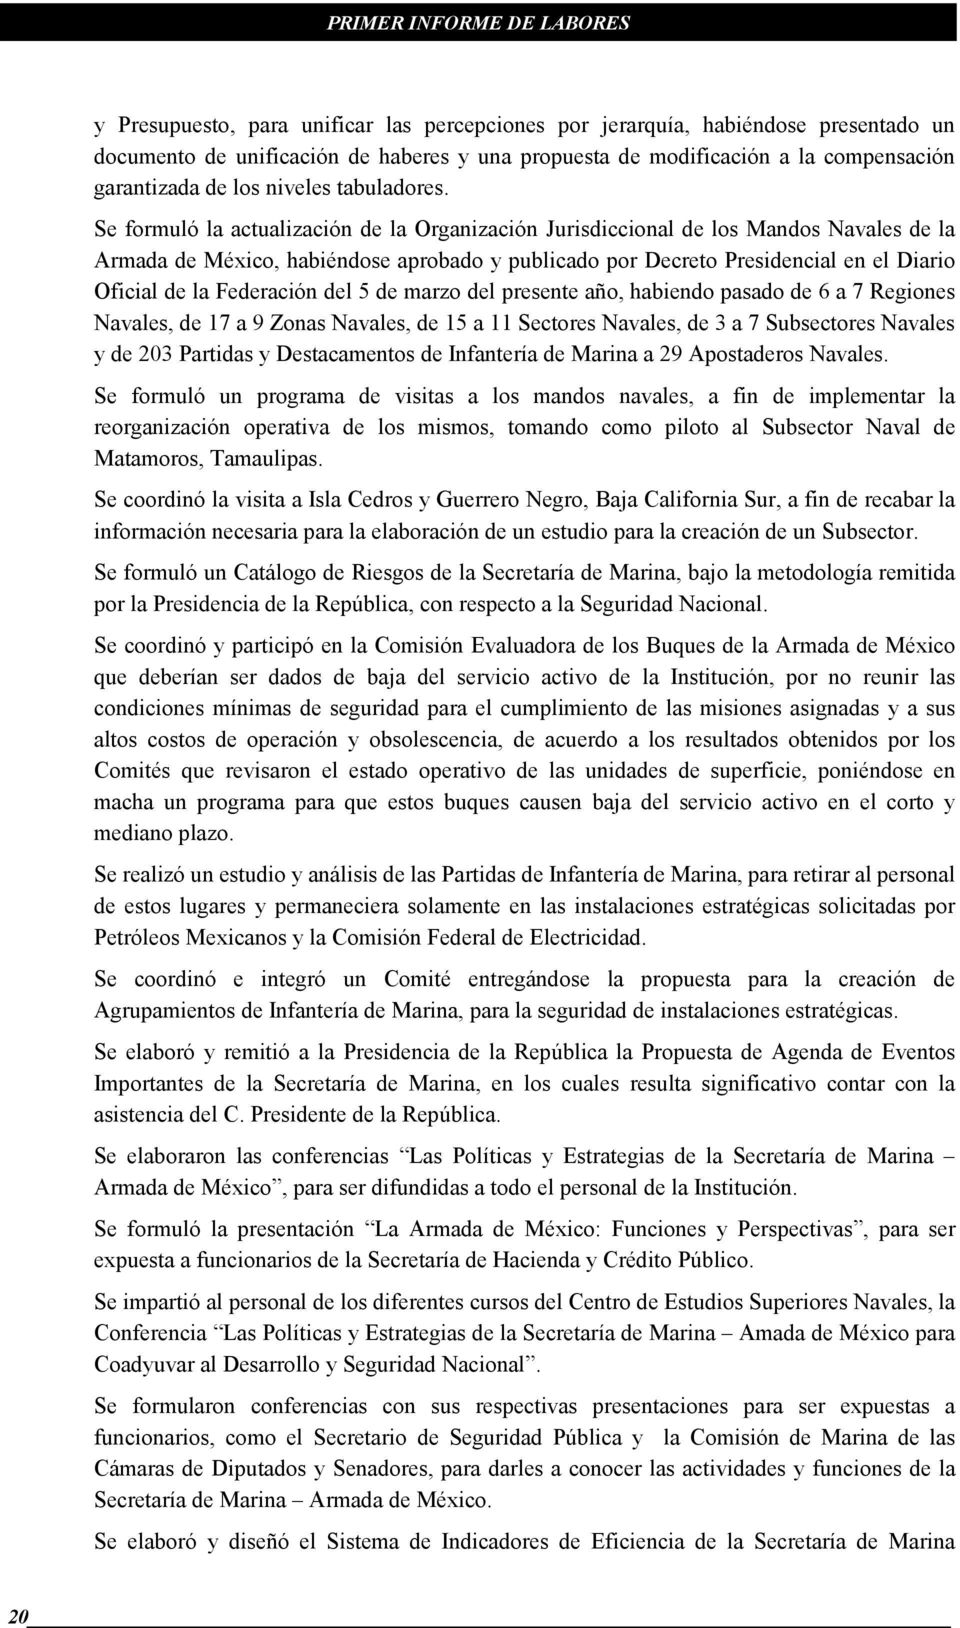 Se formuló la actualización de la Organización Jurisdiccional de los Mandos Navales de la Armada de México, habiéndose aprobado y publicado por Decreto Presidencial en el Diario Oficial de la